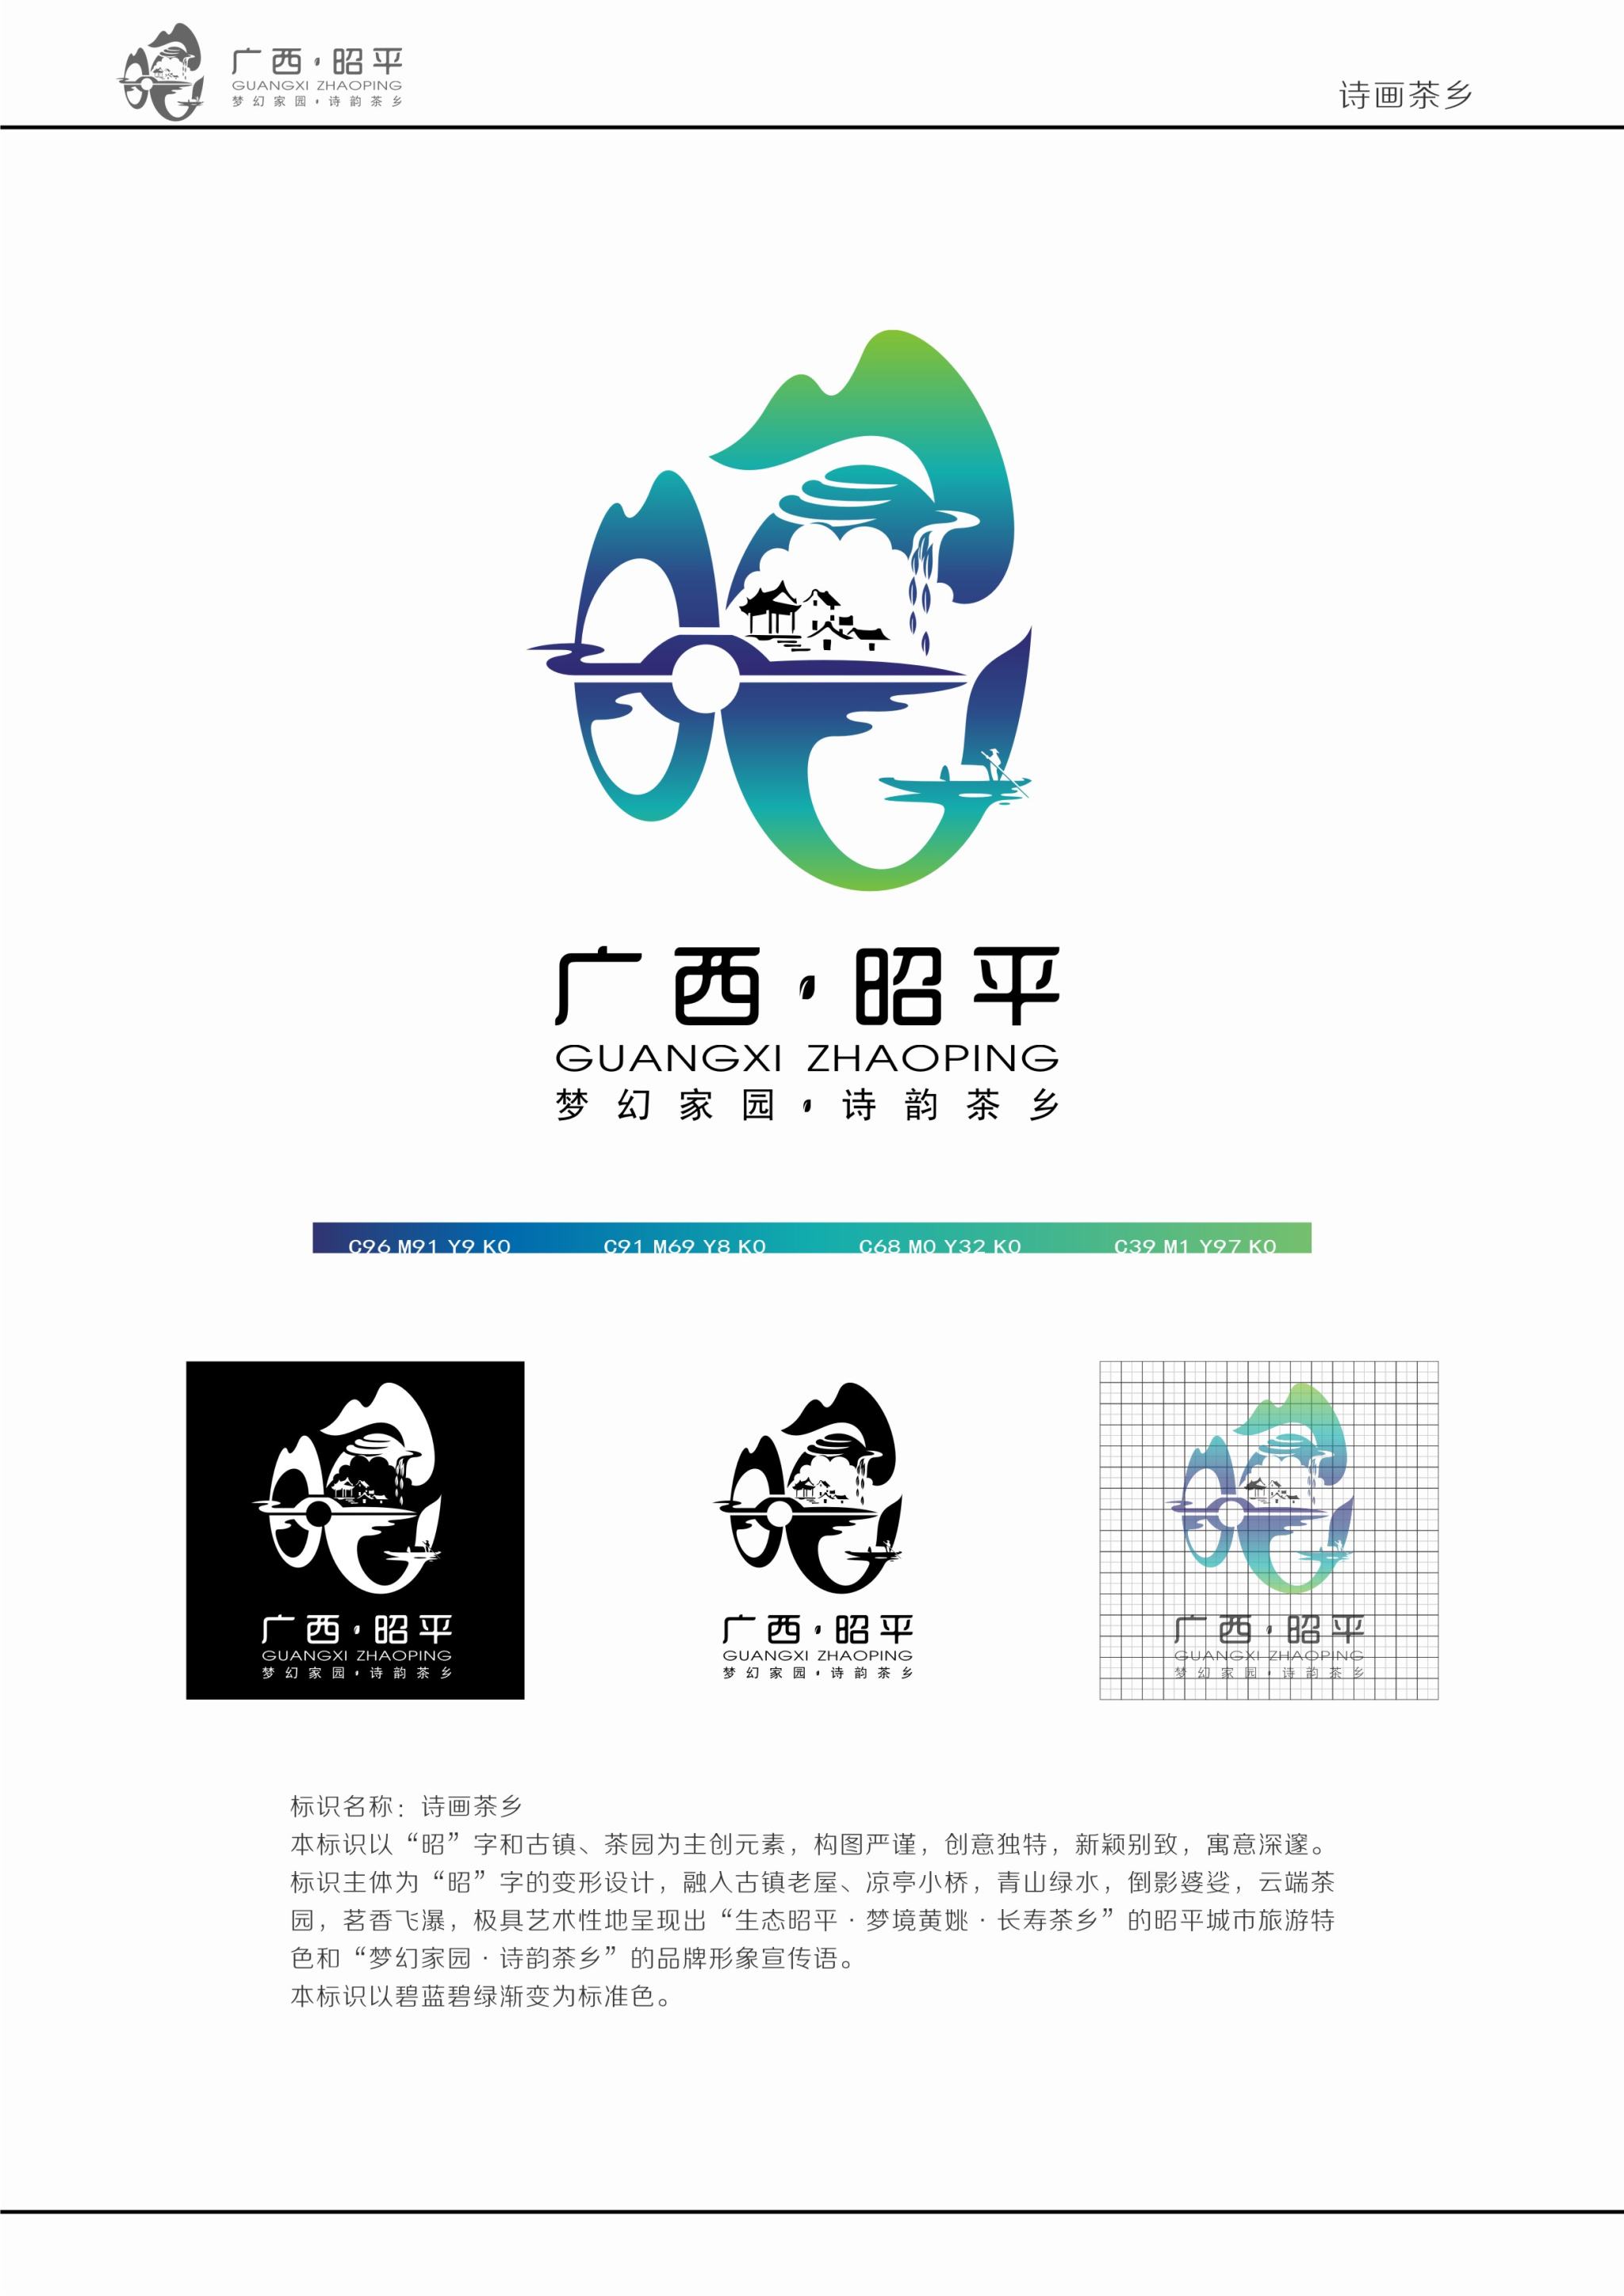 广西昭平县城市旅游形象标识(logo)-张新社